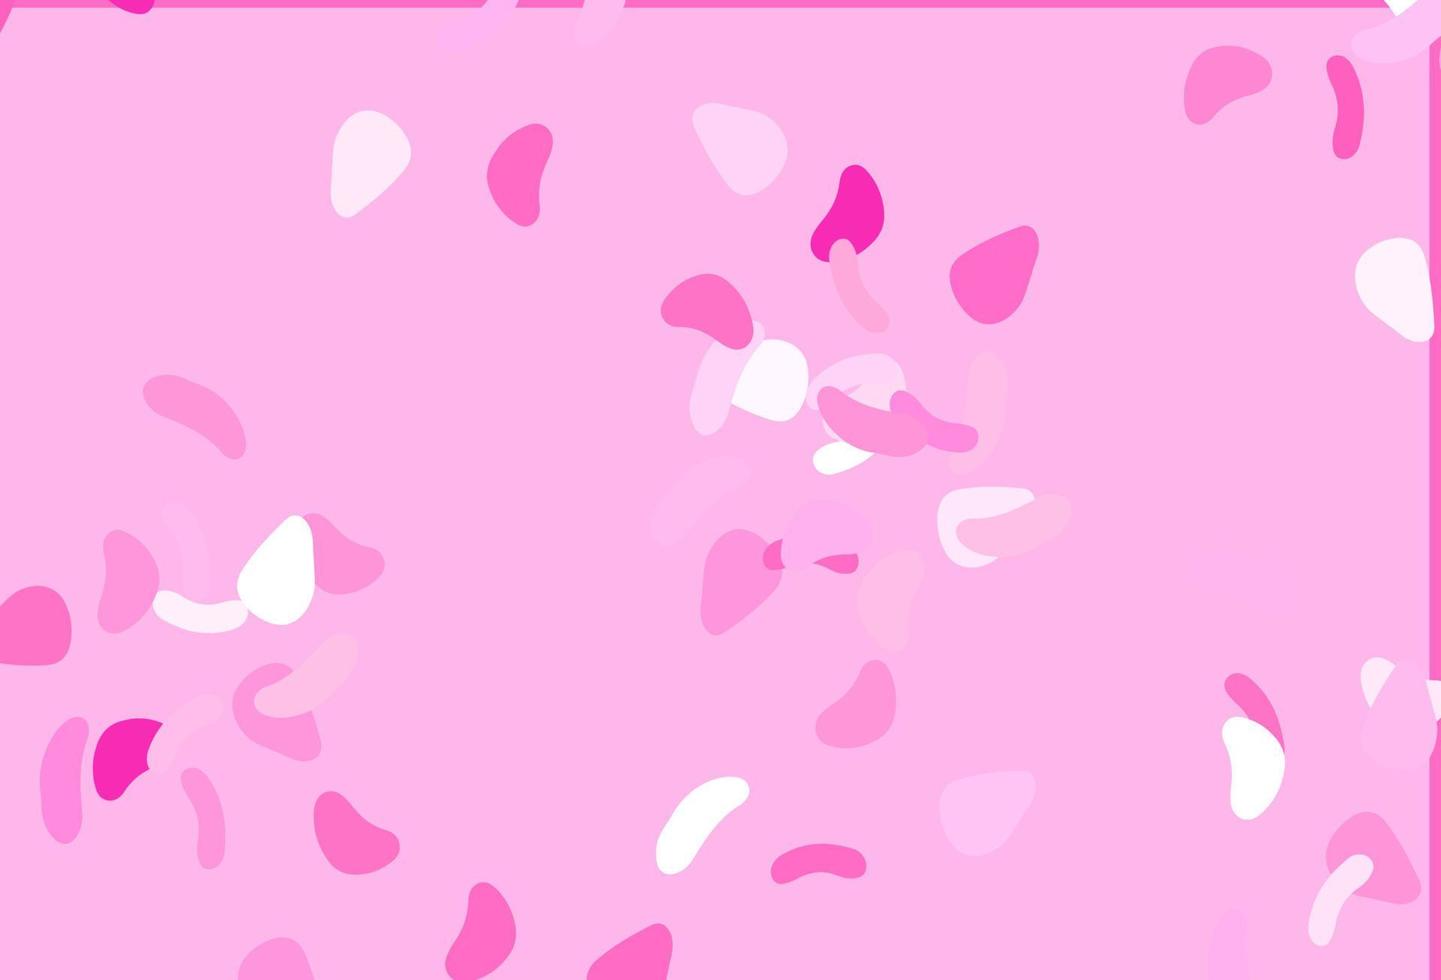 trama vettoriale rosa chiaro con forme casuali.